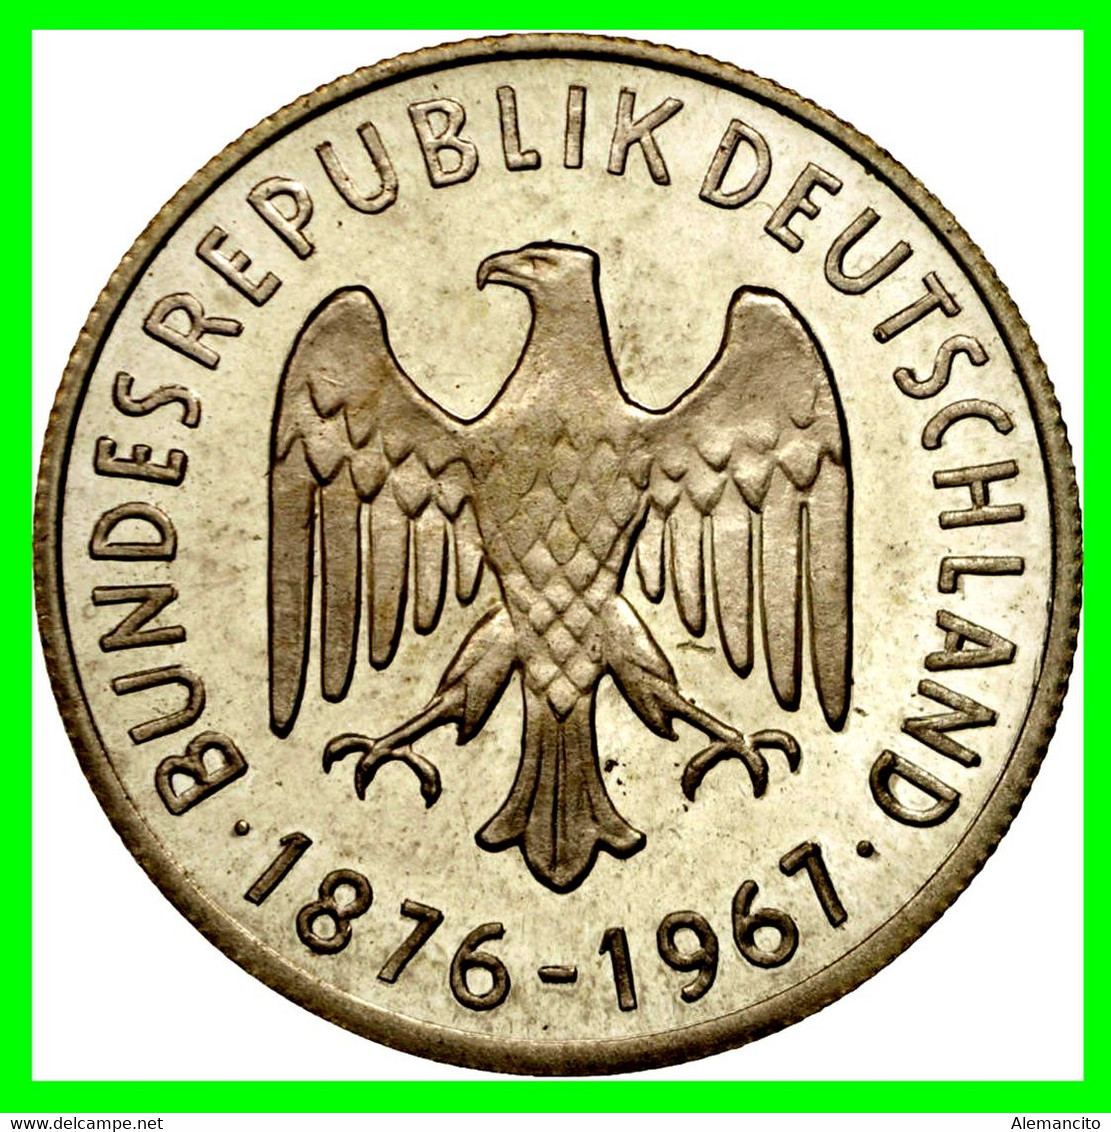 GERMANY ( ALEMANIA ) MONEDA MEDALLA - KONRAD ADENAUER 1876-1967 -- ALEMANIA 15.00 GR DE PLATA Y DE 35 MM DE DIAMETRO - Collezioni